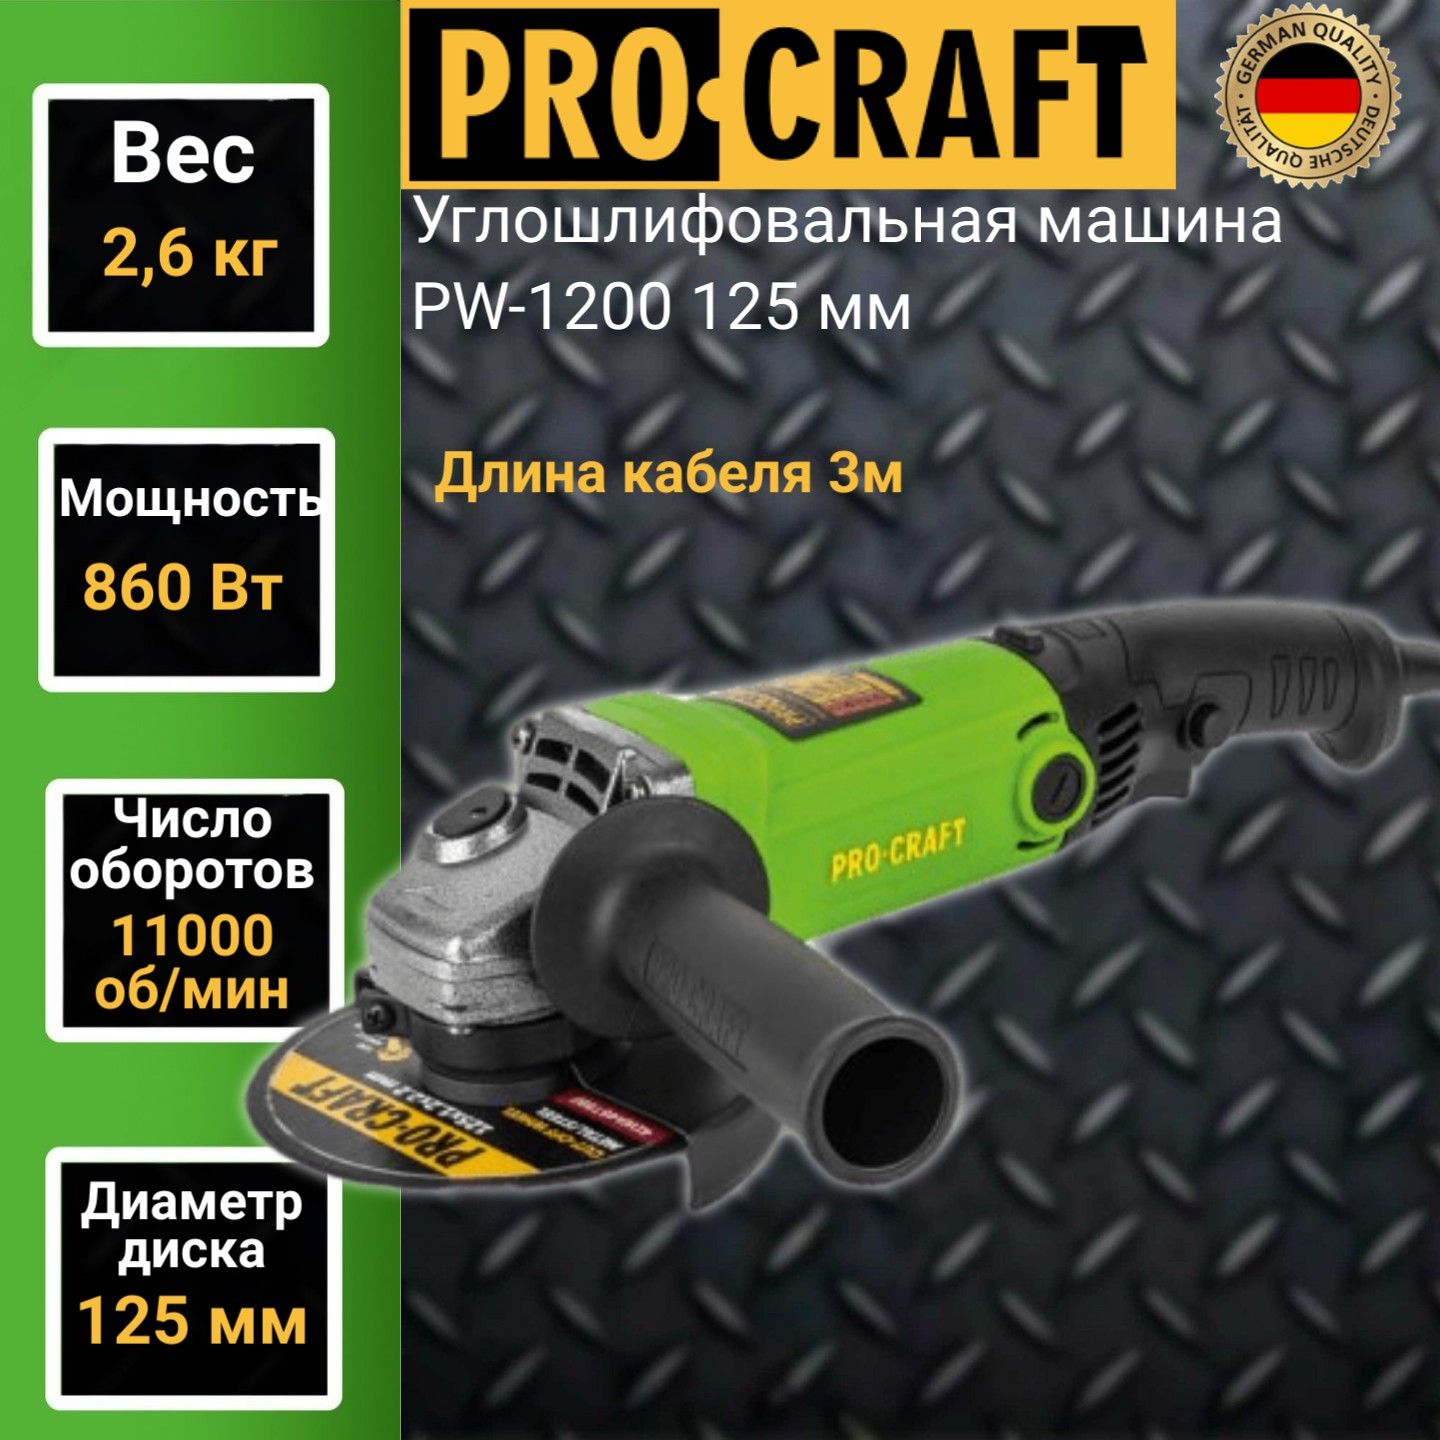 Углошлифовальная машина болгарка Procraft PW 1200, 125мм круг, 1200Вт, 11000об/мин